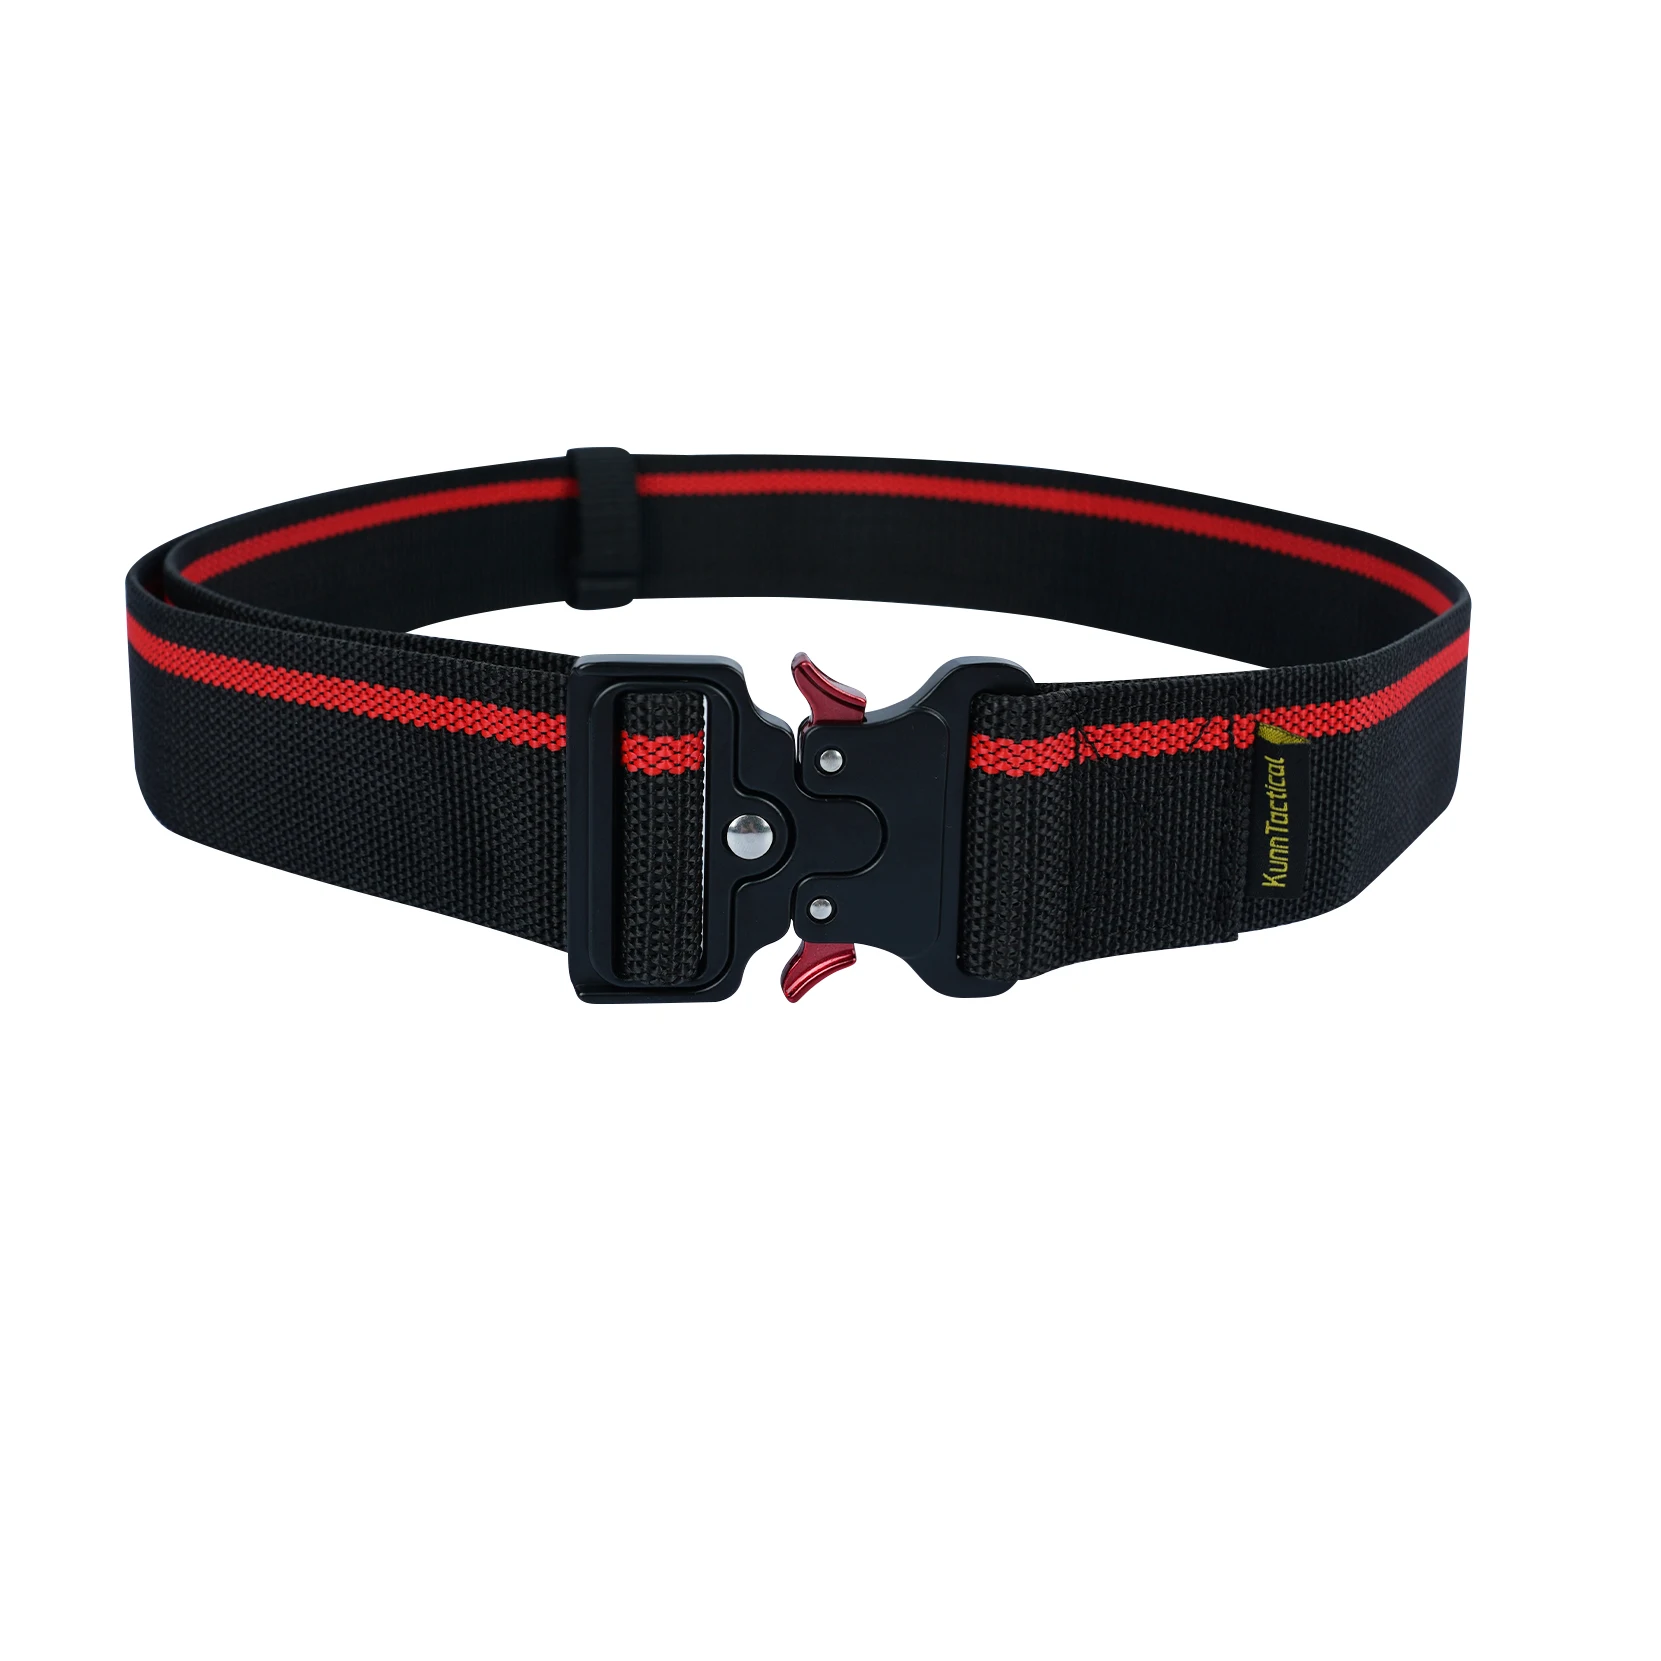 KUNN Work Belt 2-Inch Wide Quick Release Buckle Heavy Duty Multi-Purpose Men's Belts